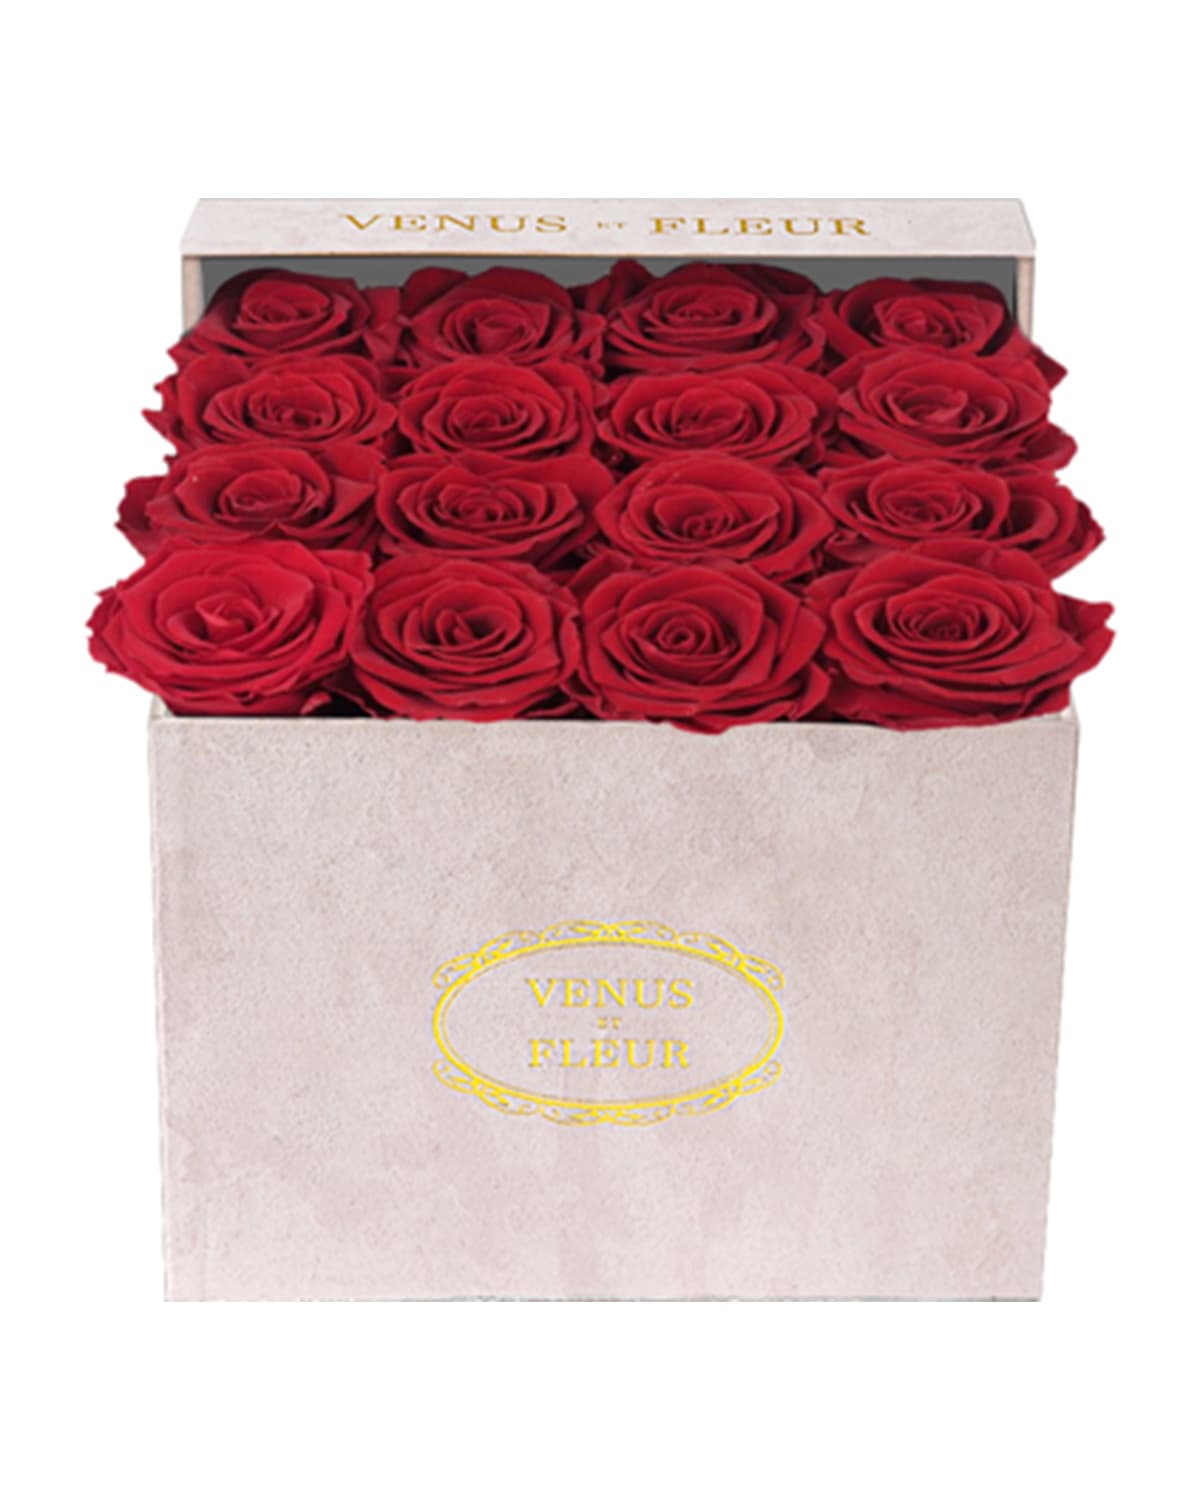 Venus Et Fleur Suede Small Square Rose Box In Red